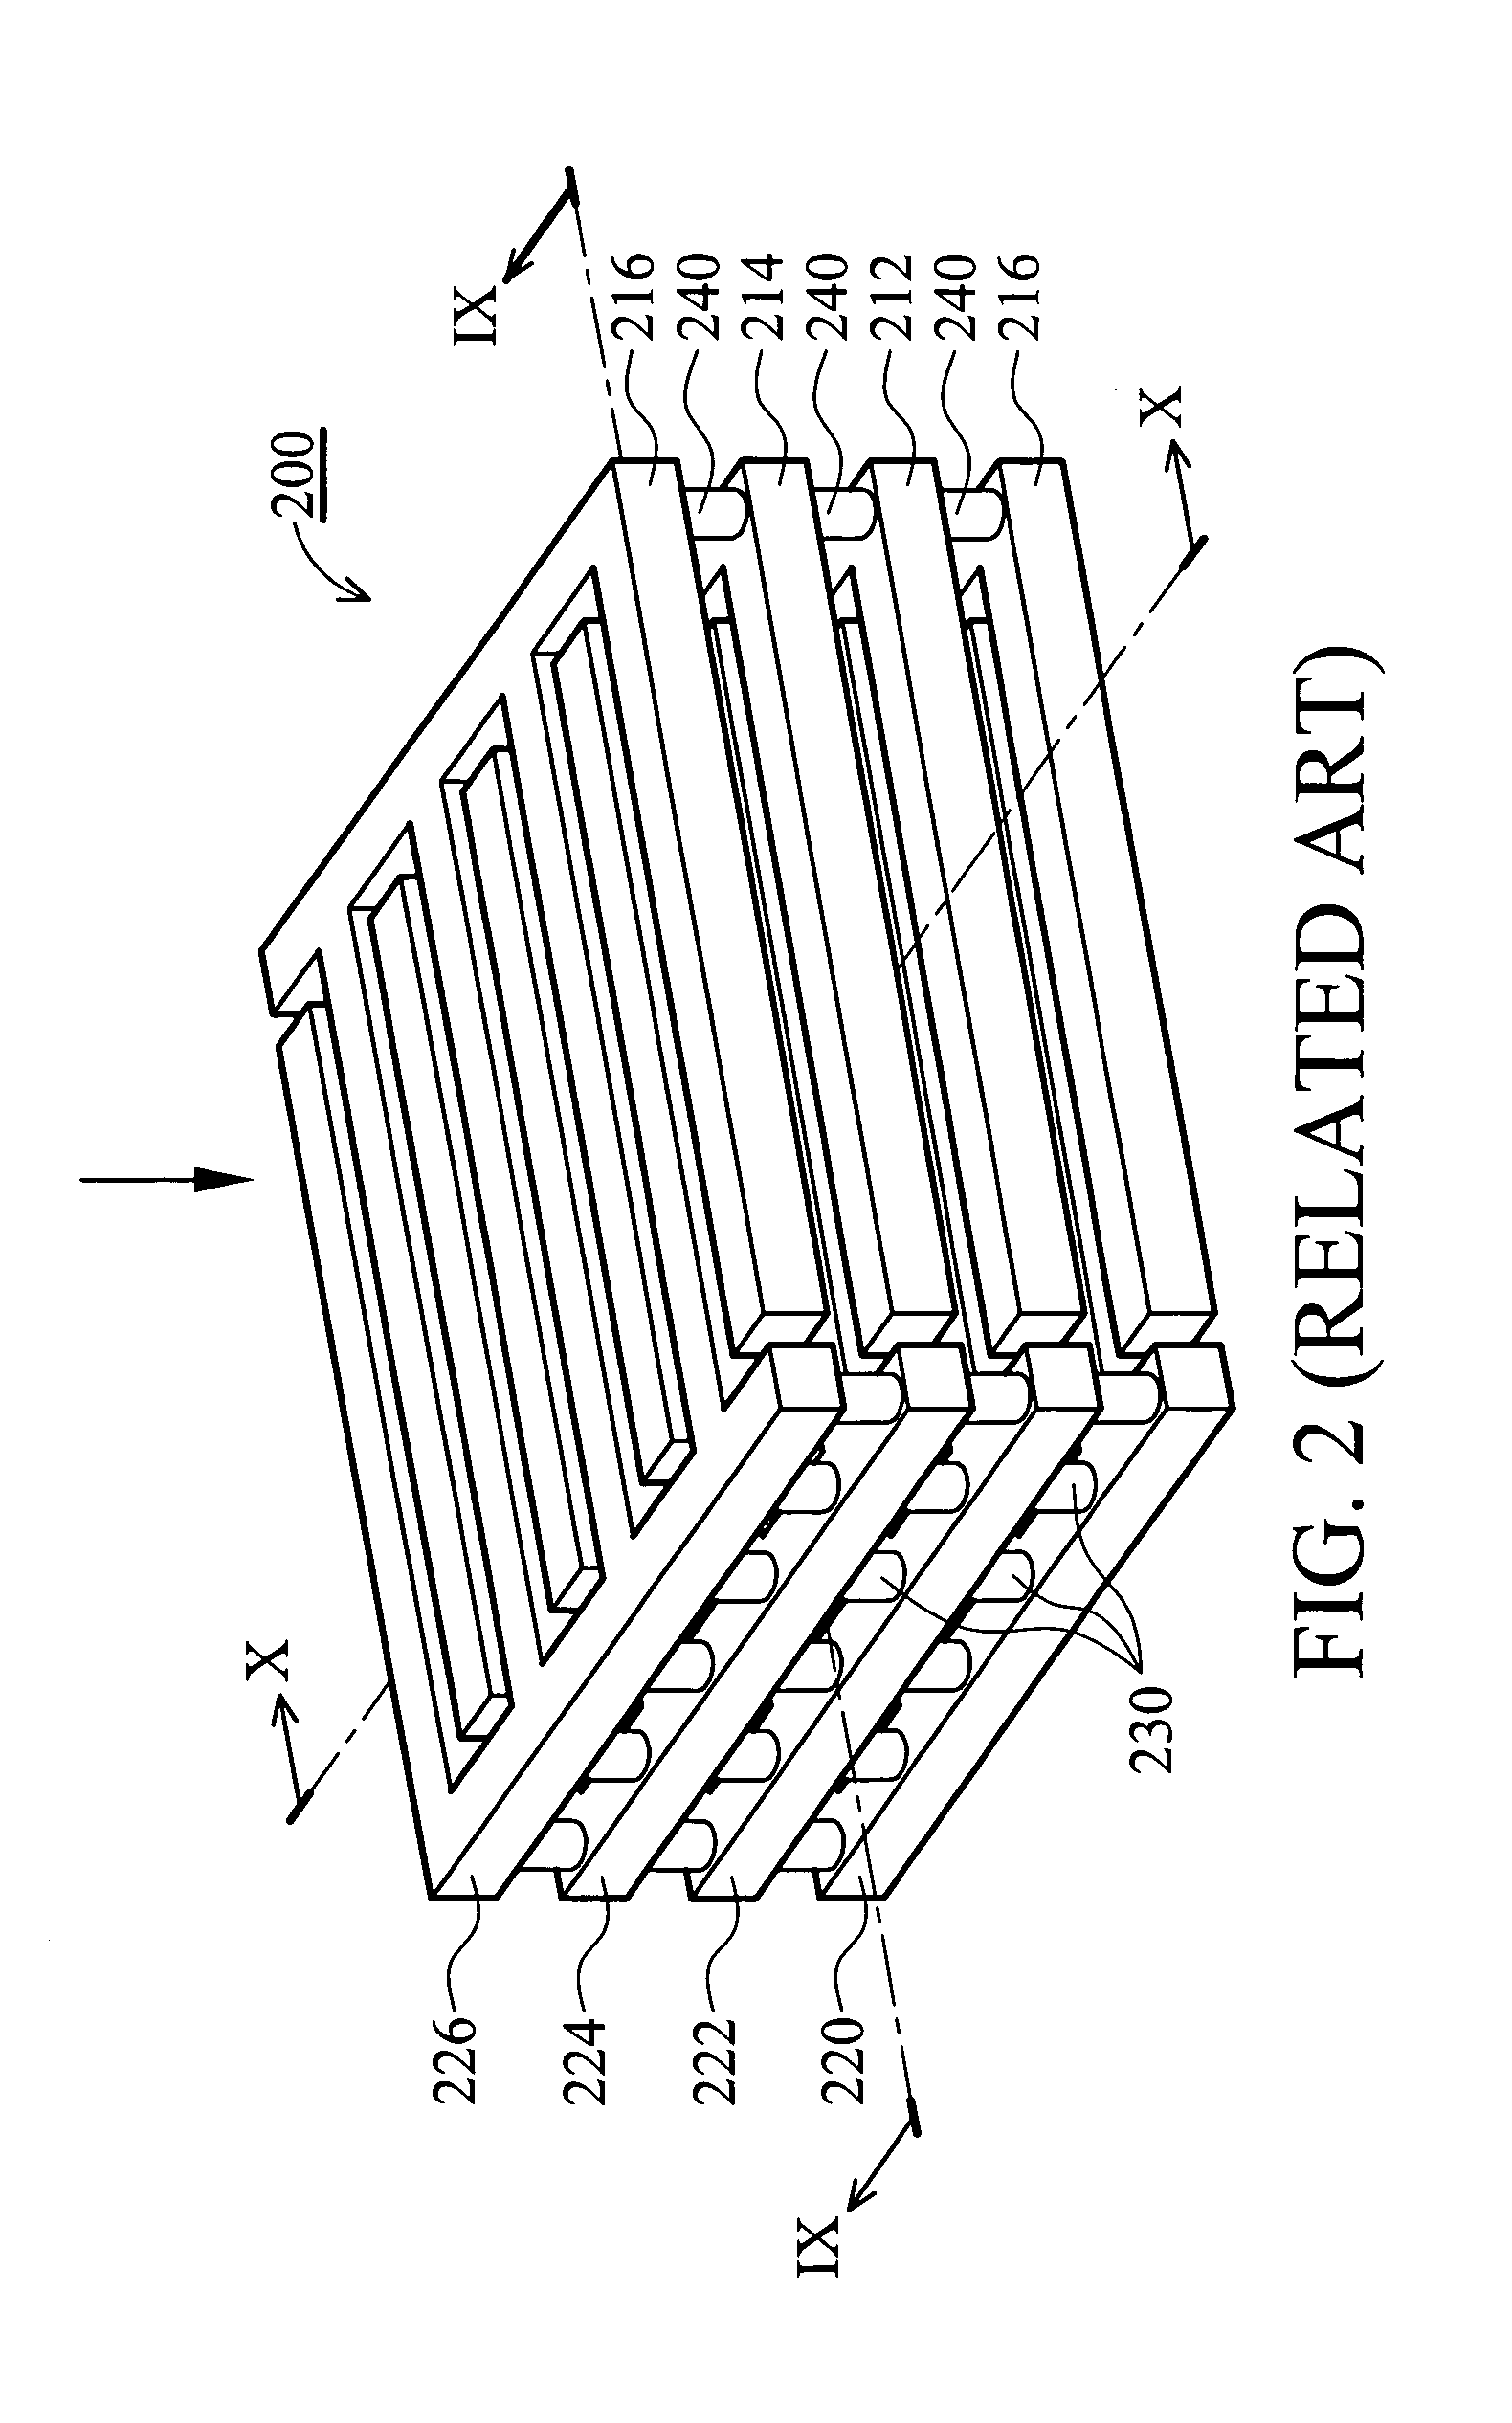 Interdigitized capacitor